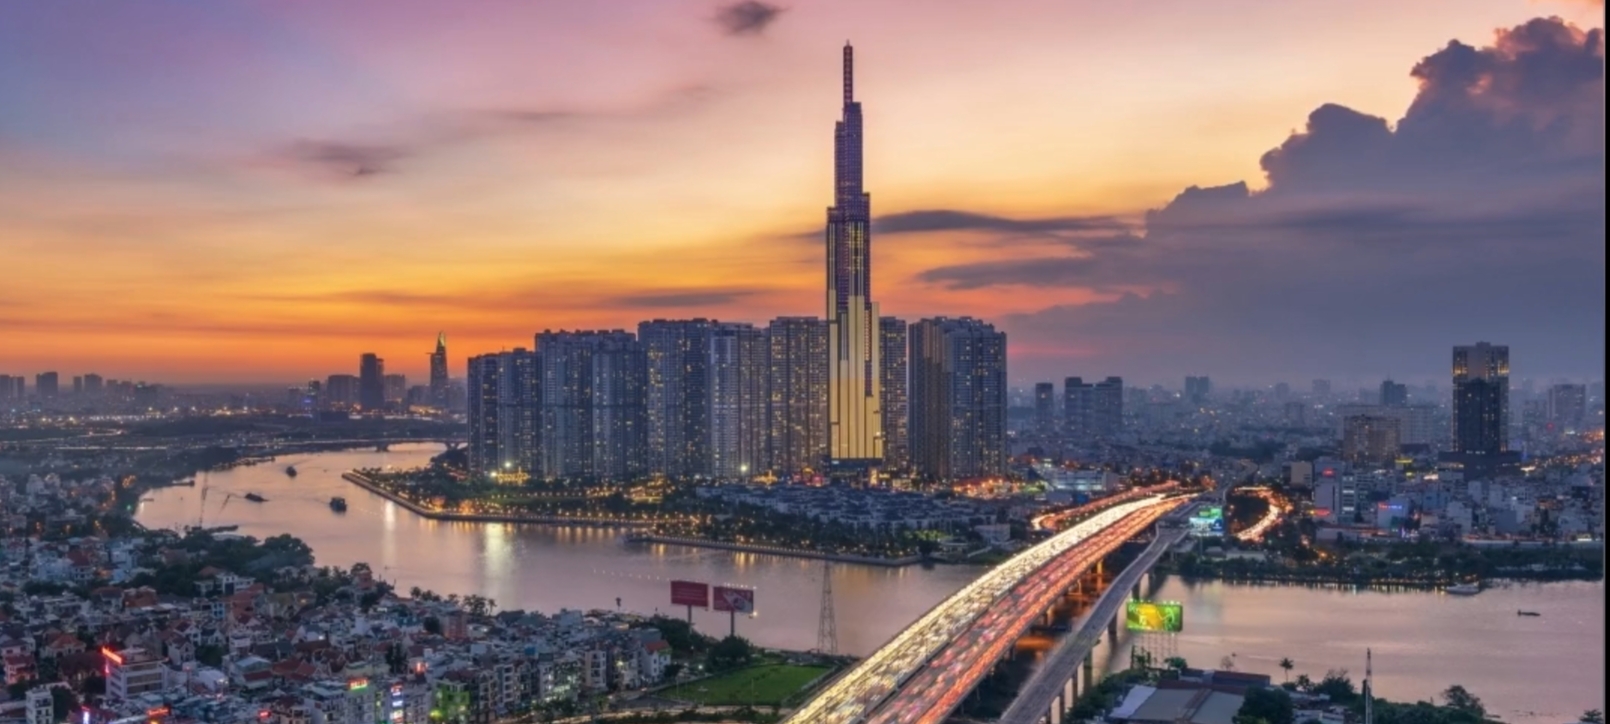 越南最高楼461米的地标81号,位于越南最大城市胡志明市